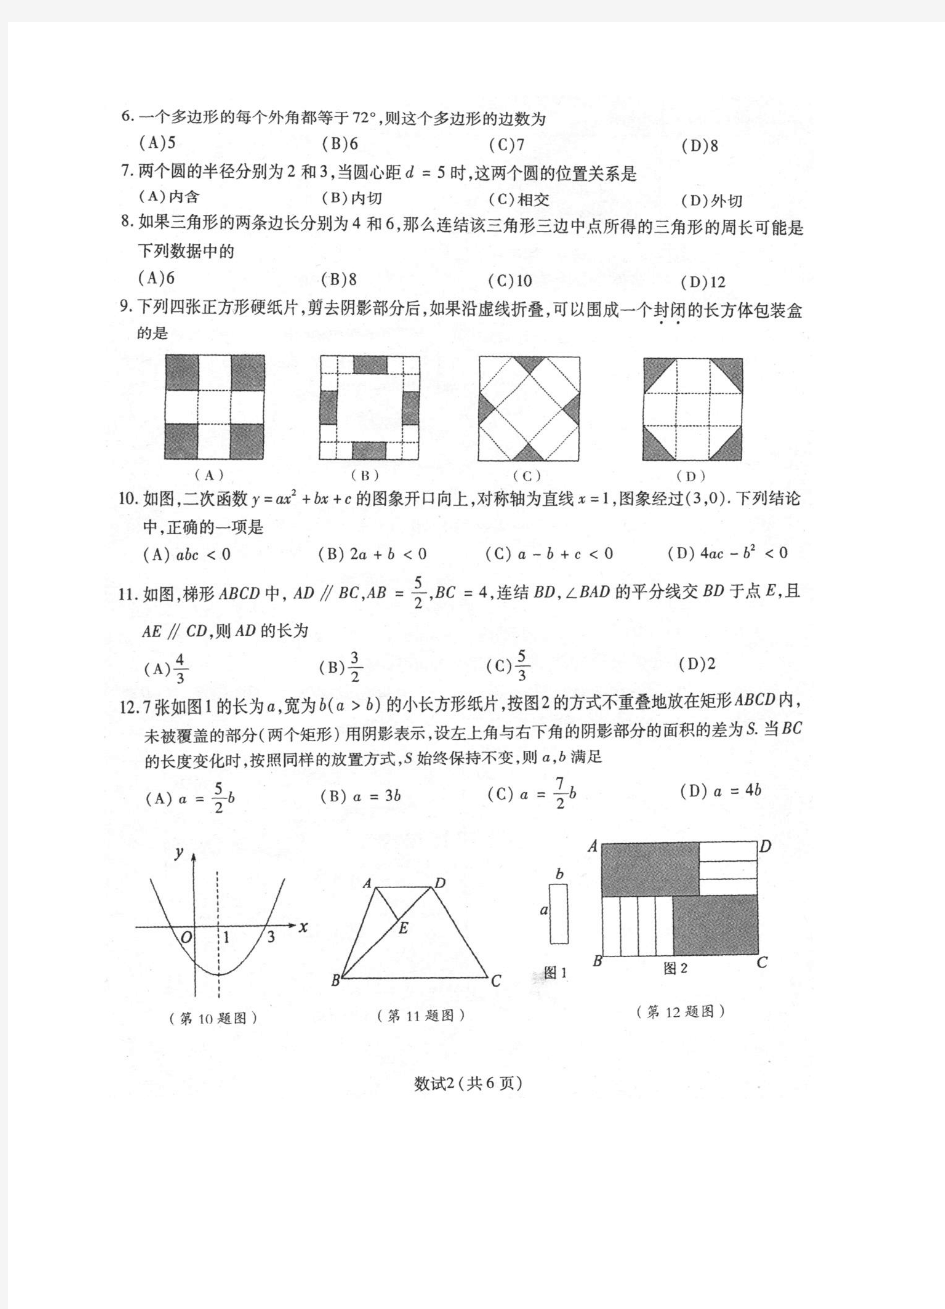 2013年宁波中考数学试题清晰扫描_51187